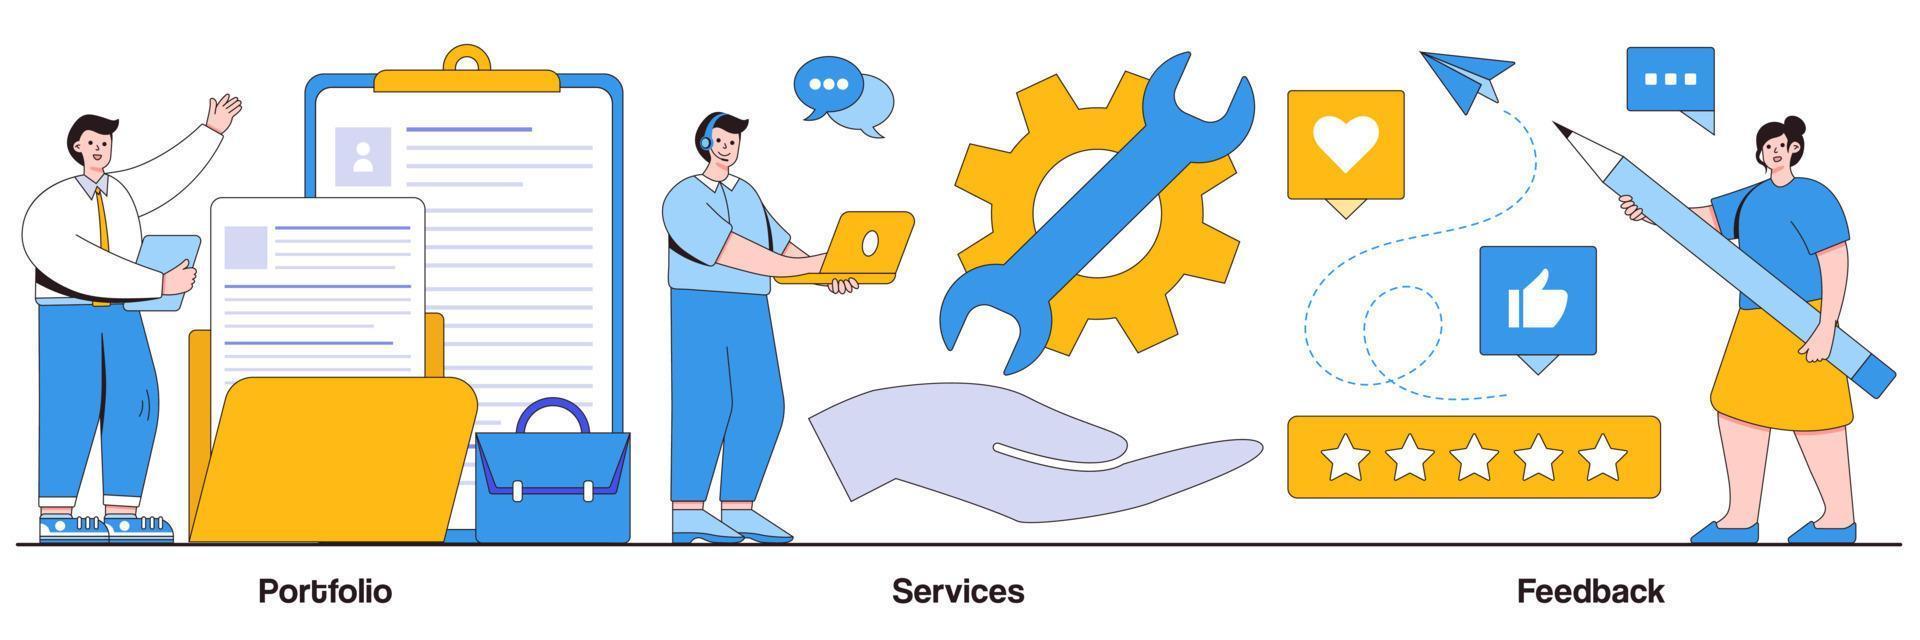 portfólio, serviços e pacote ilustrado de feedback vetor